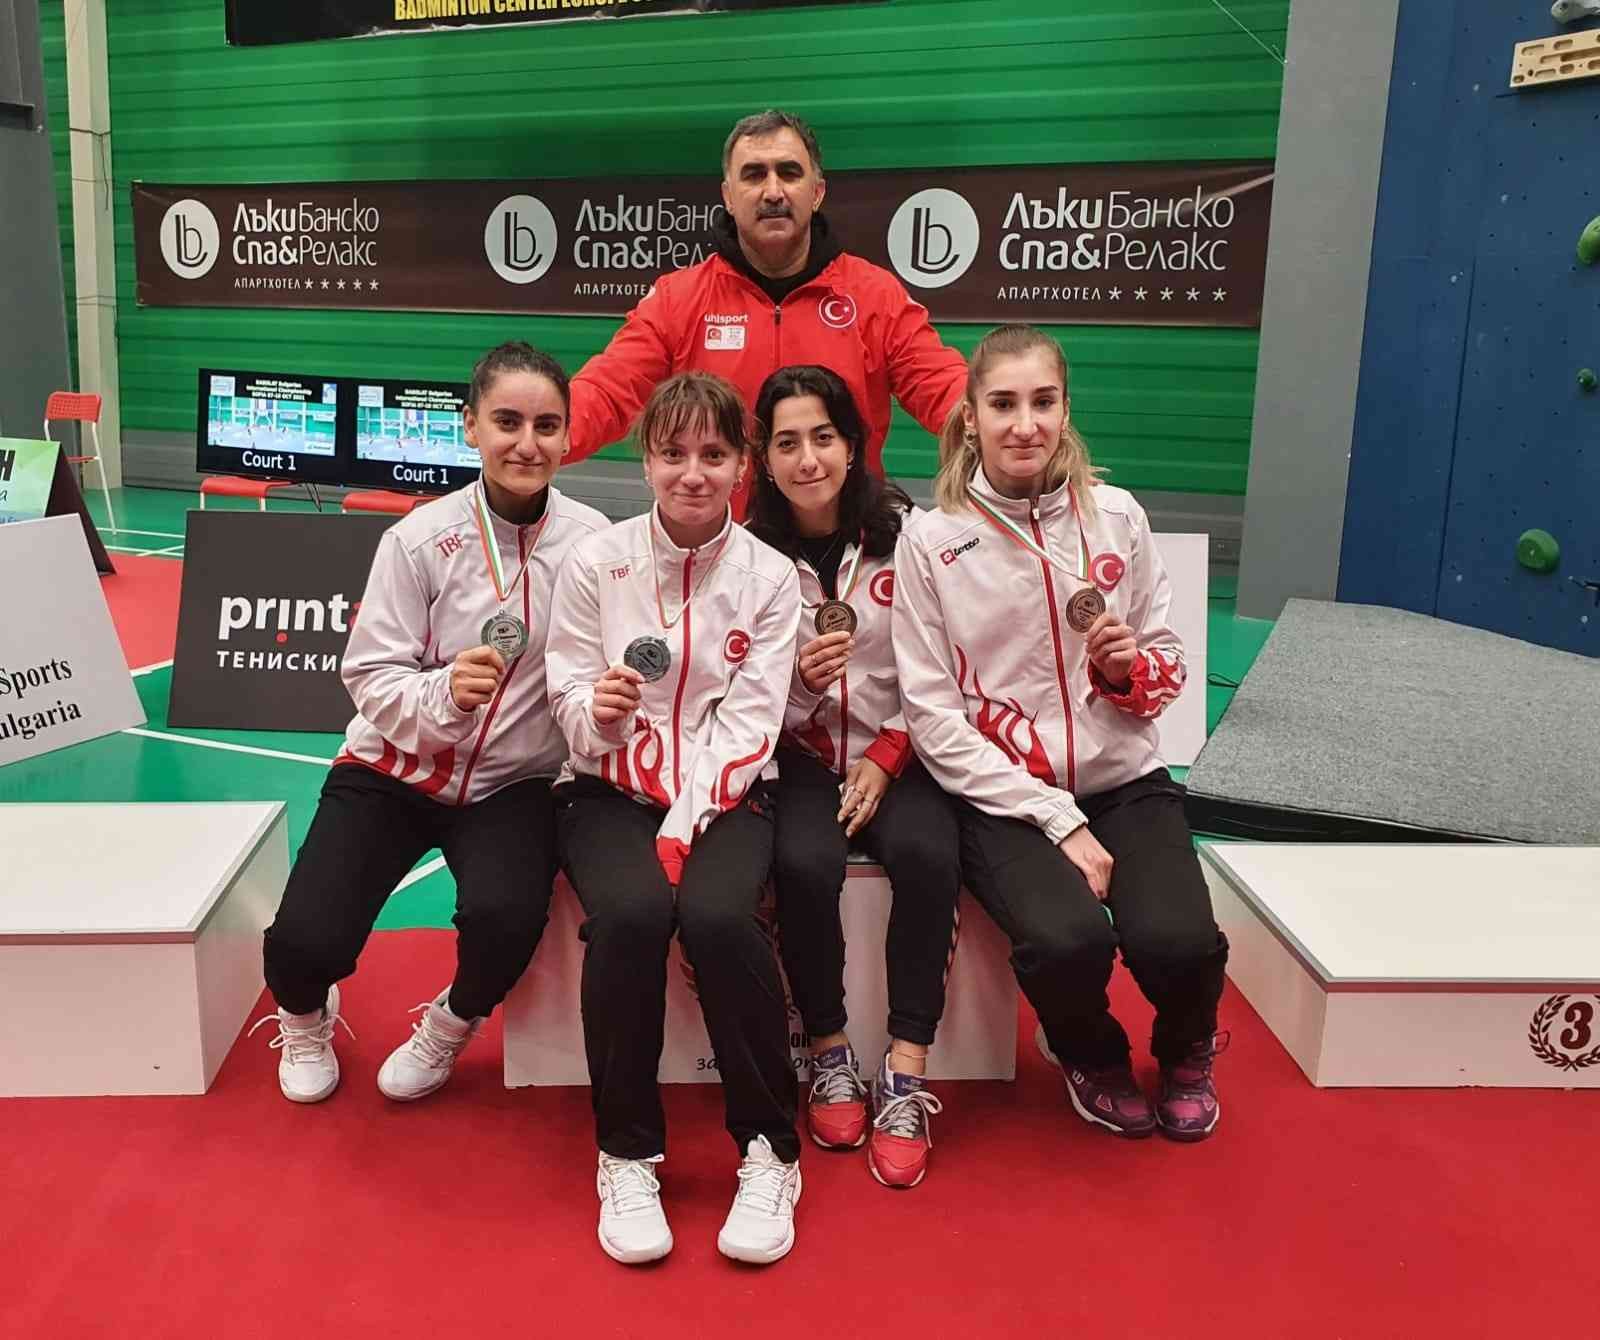 Erzincanlı sporcular Badminton Milli takımının gururu oldu #erzincan